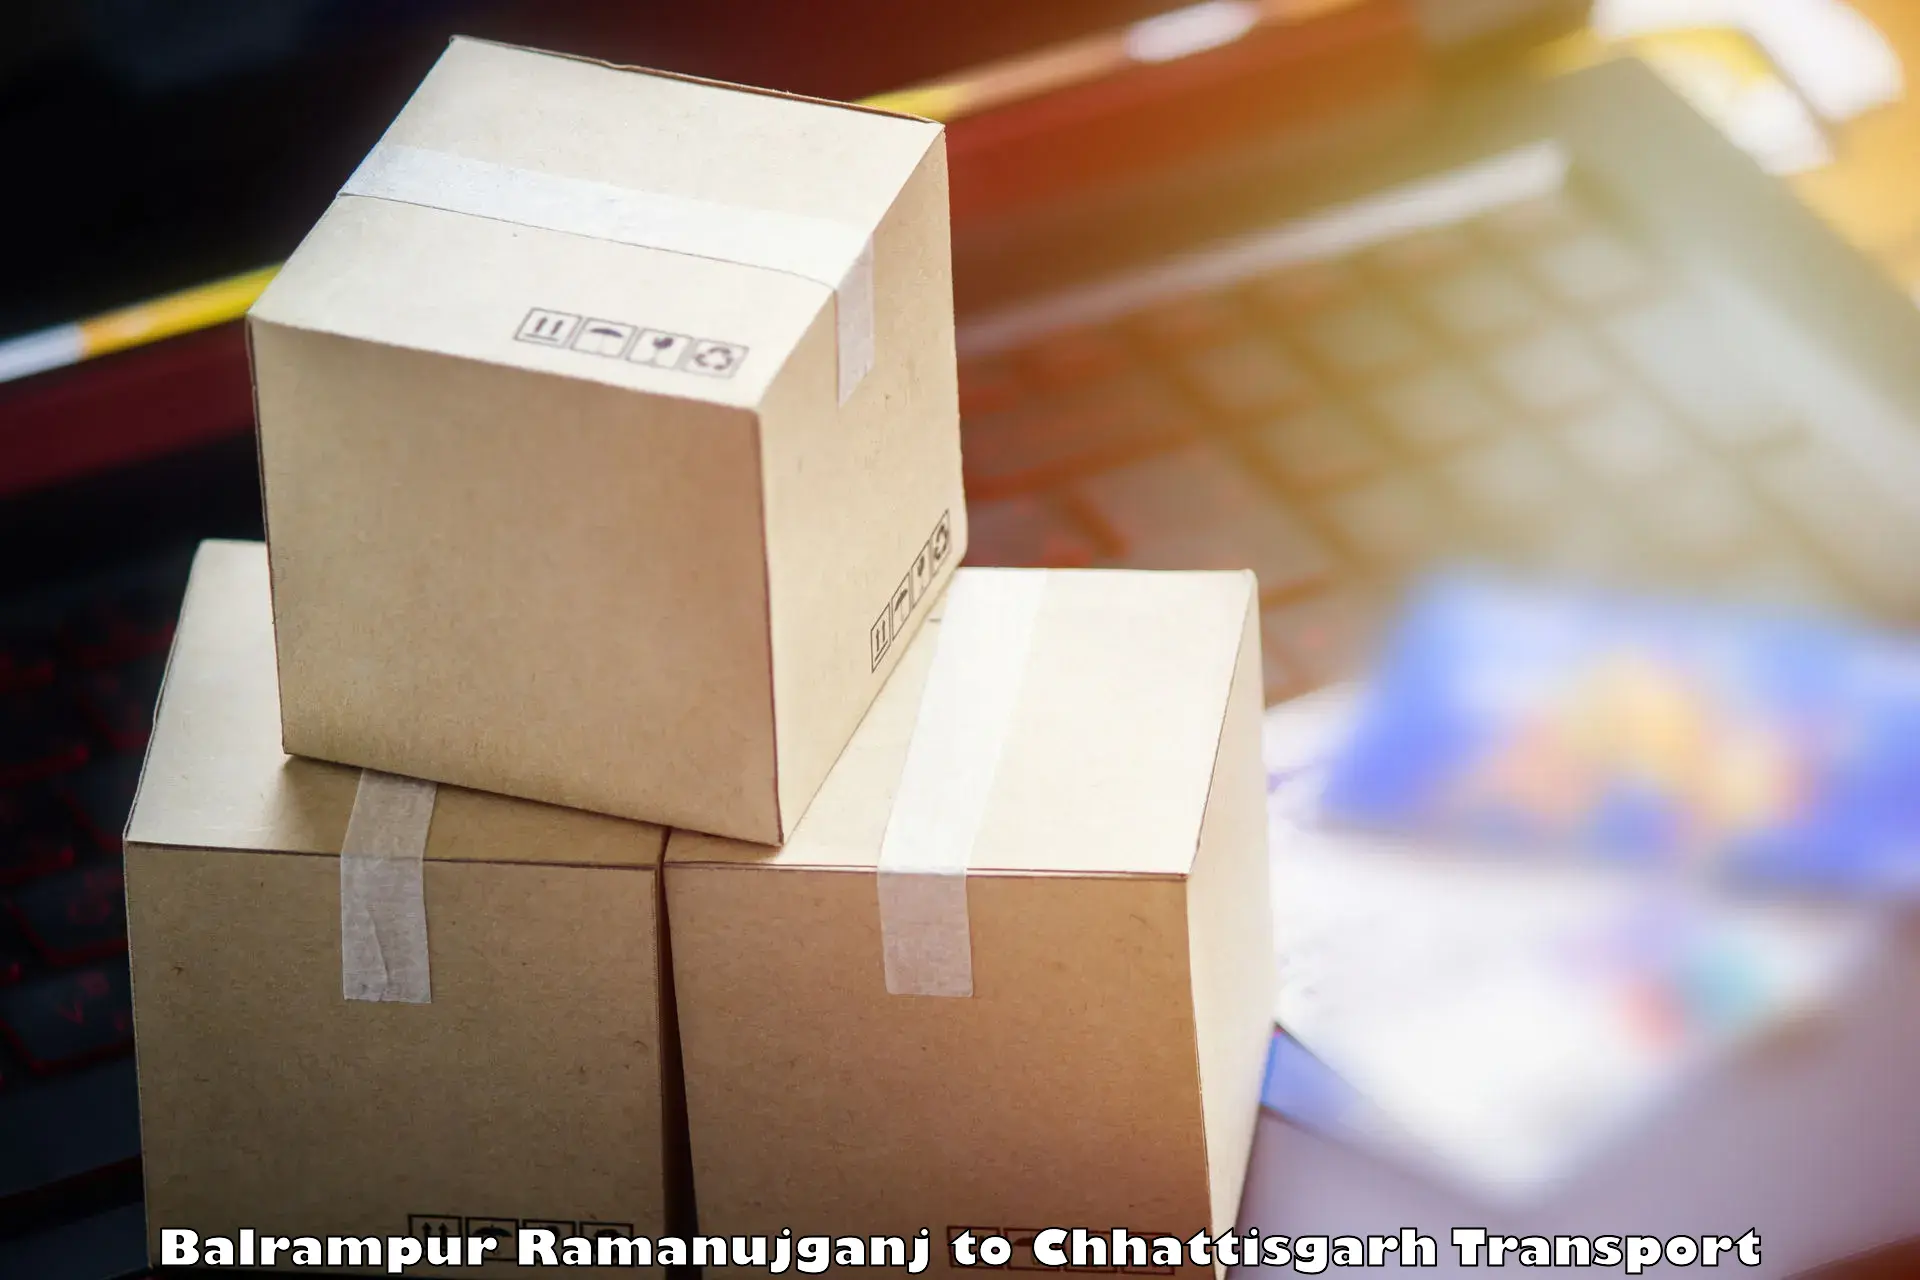 Two wheeler parcel service Balrampur Ramanujganj to Nagri